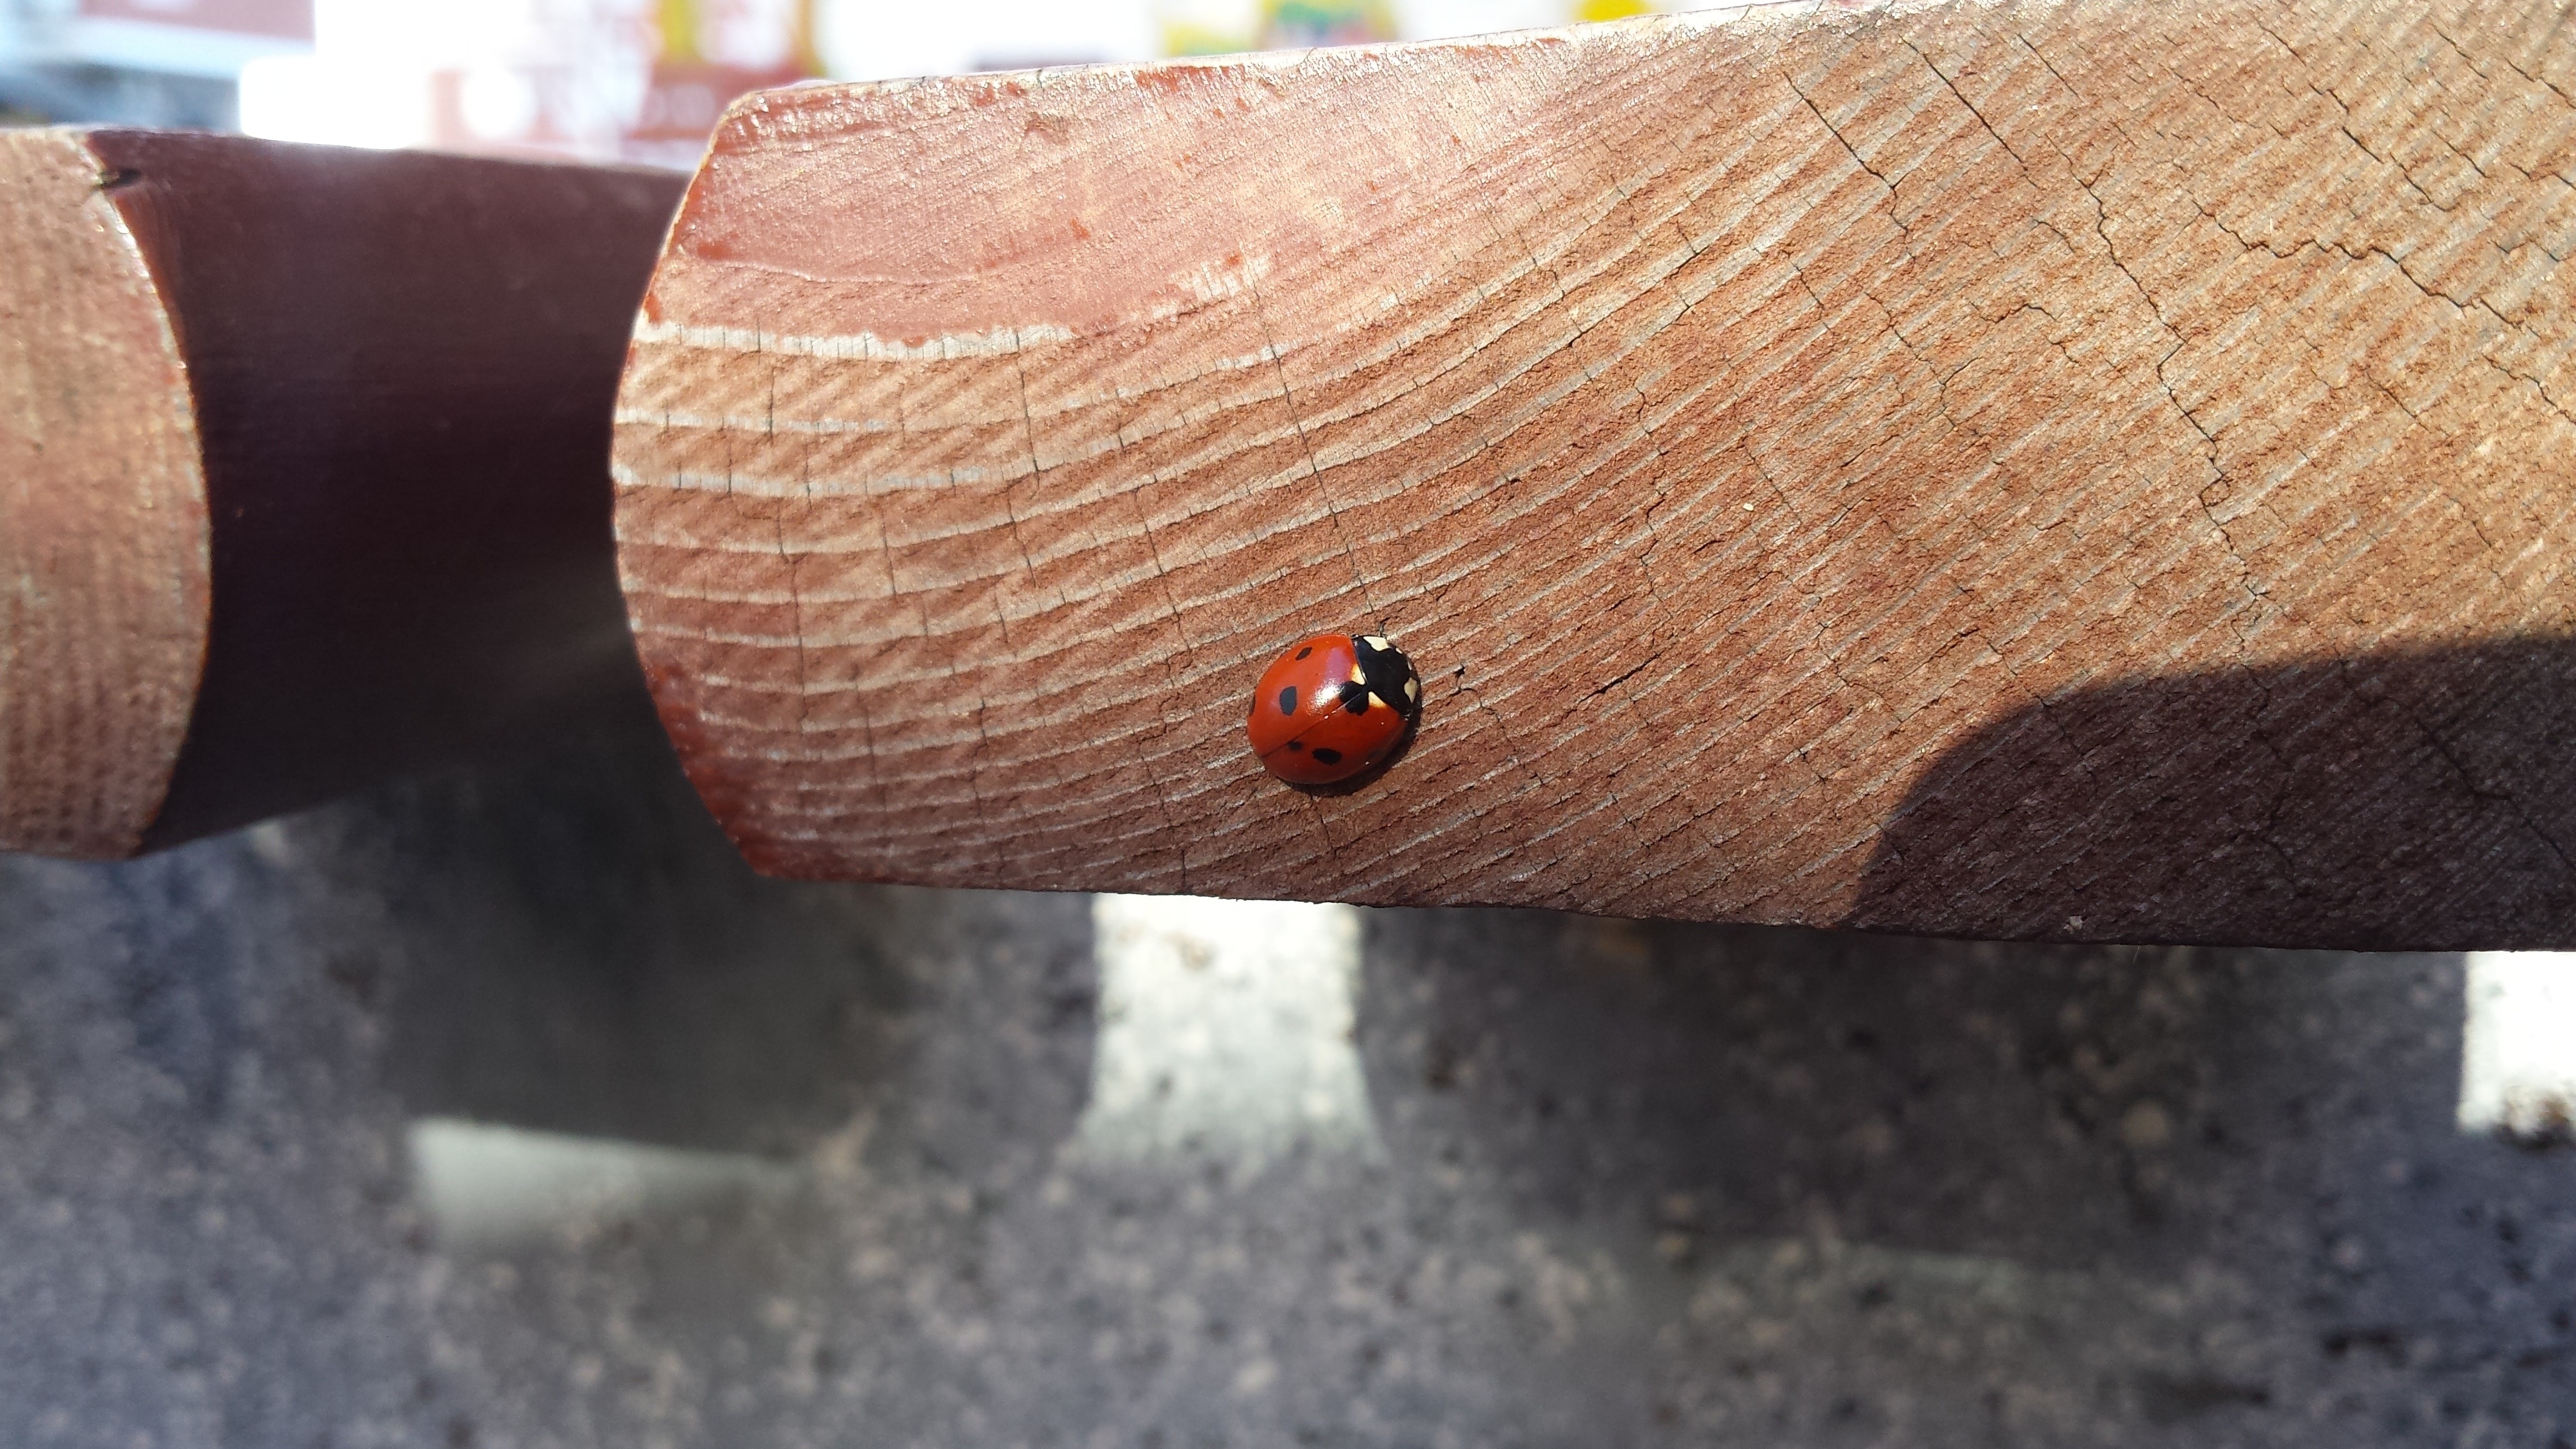 spotted ladybug